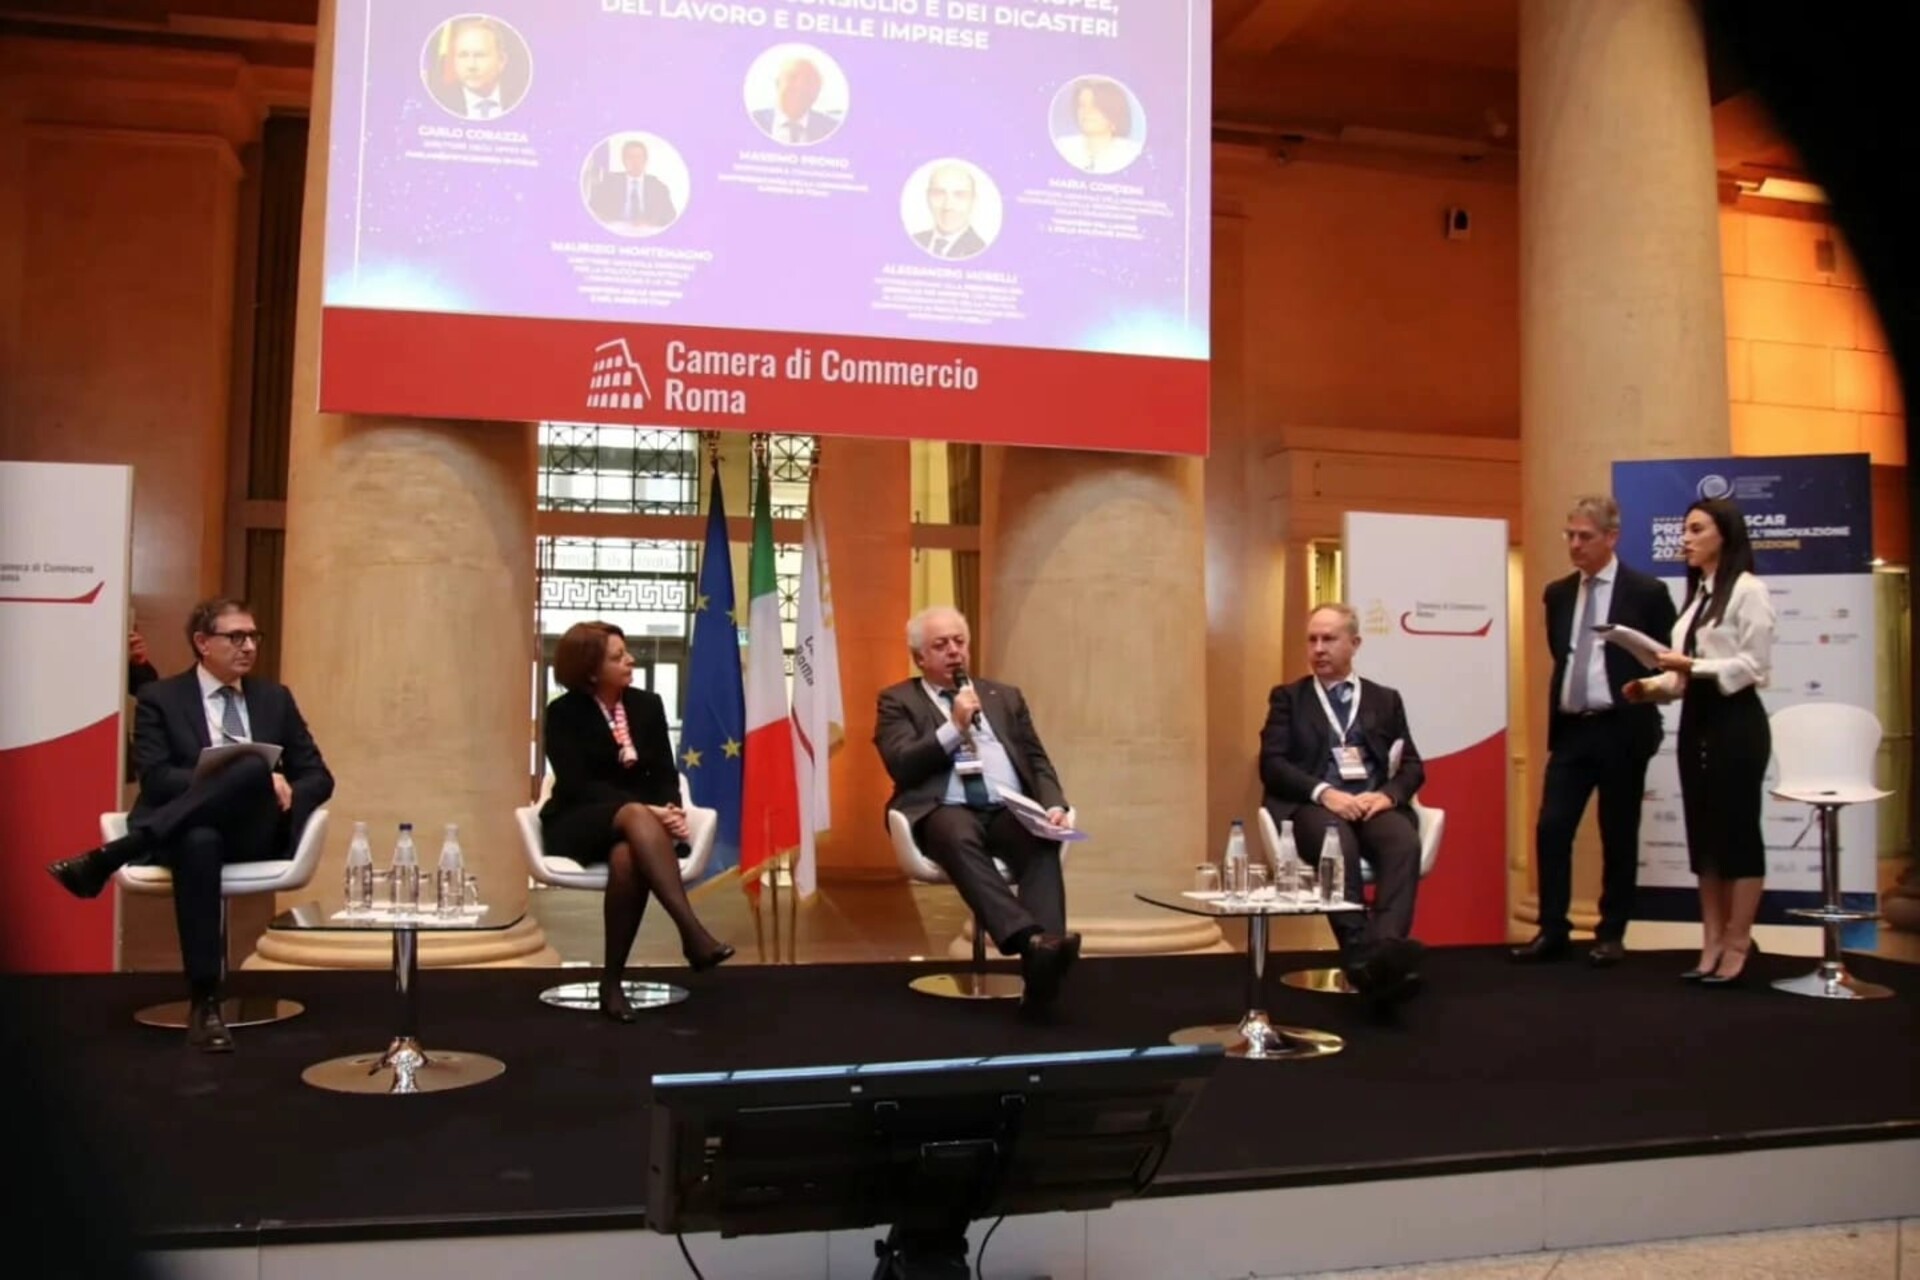 Innovation Oscar: "Sjätte rapporten om tillståndet för ungdomar och innovation i Italien" utarbetad av den vetenskapliga kommittén